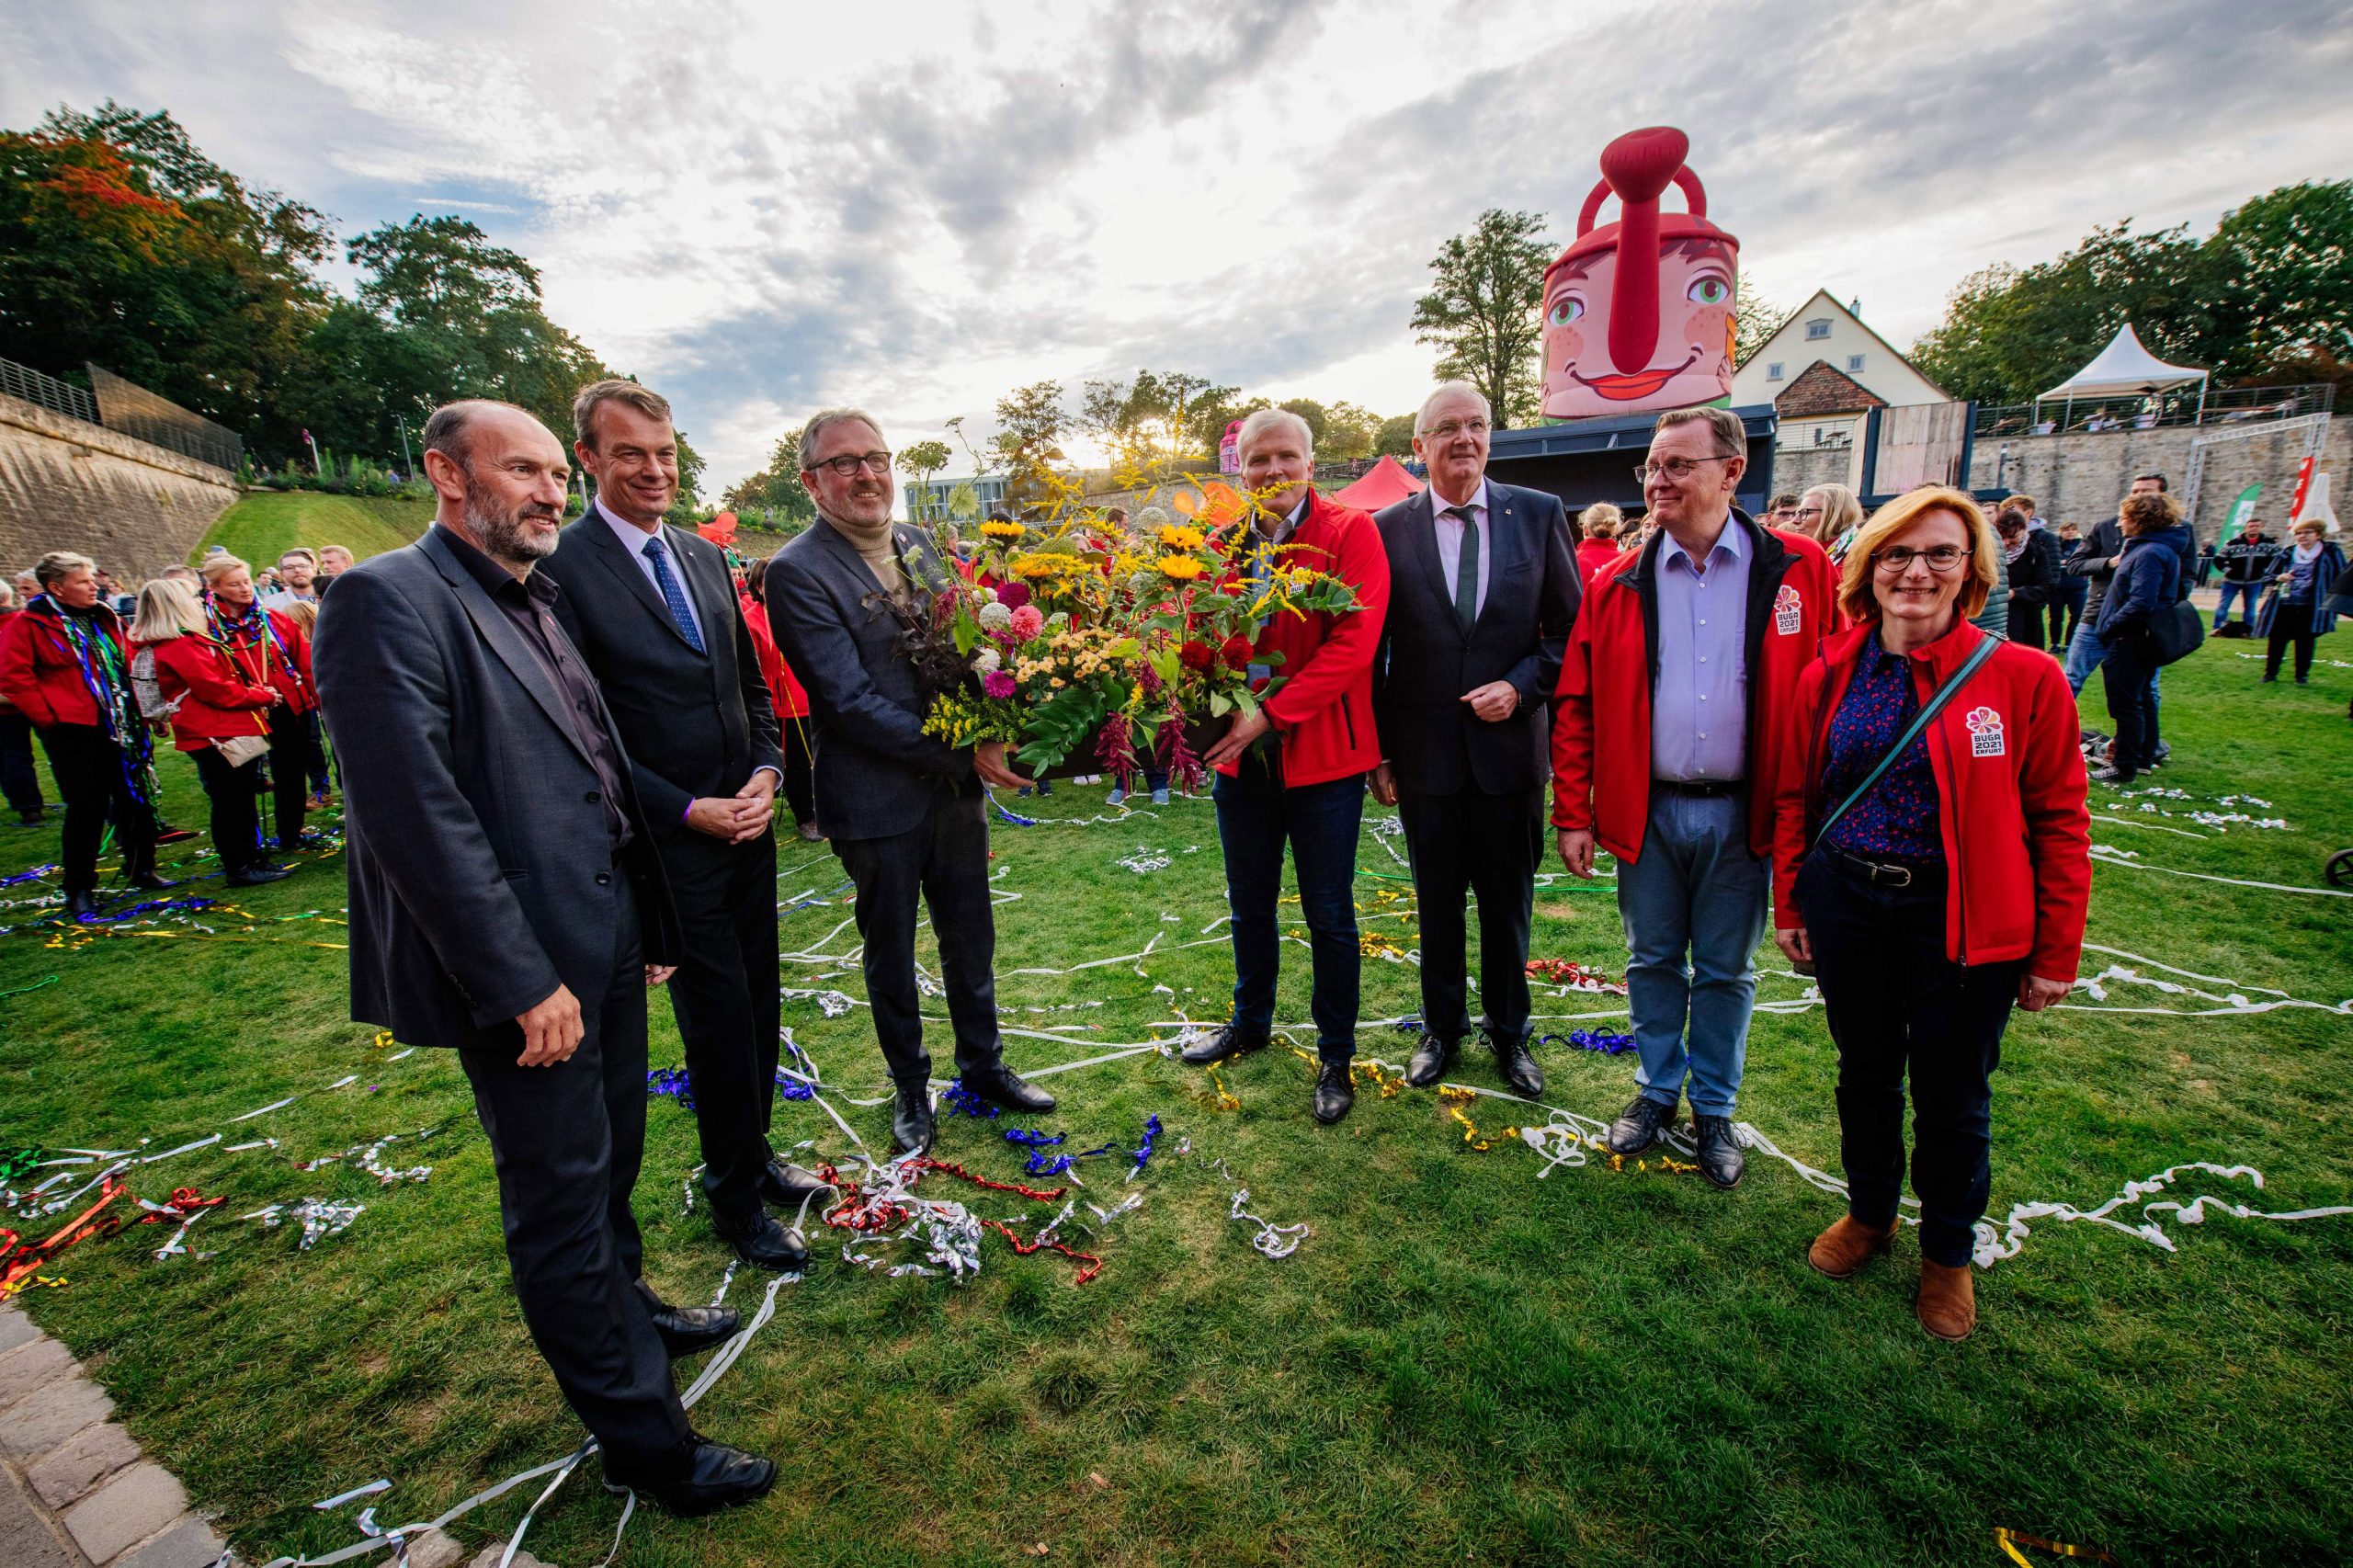 Sieben Menschen, darunter Oberbürgermeister Dr. Peter Kurz und BUGA 23 Geschäftsführer Michael Schnellbach stehen in einem Halbkreis und halten einen Blumenstrauß